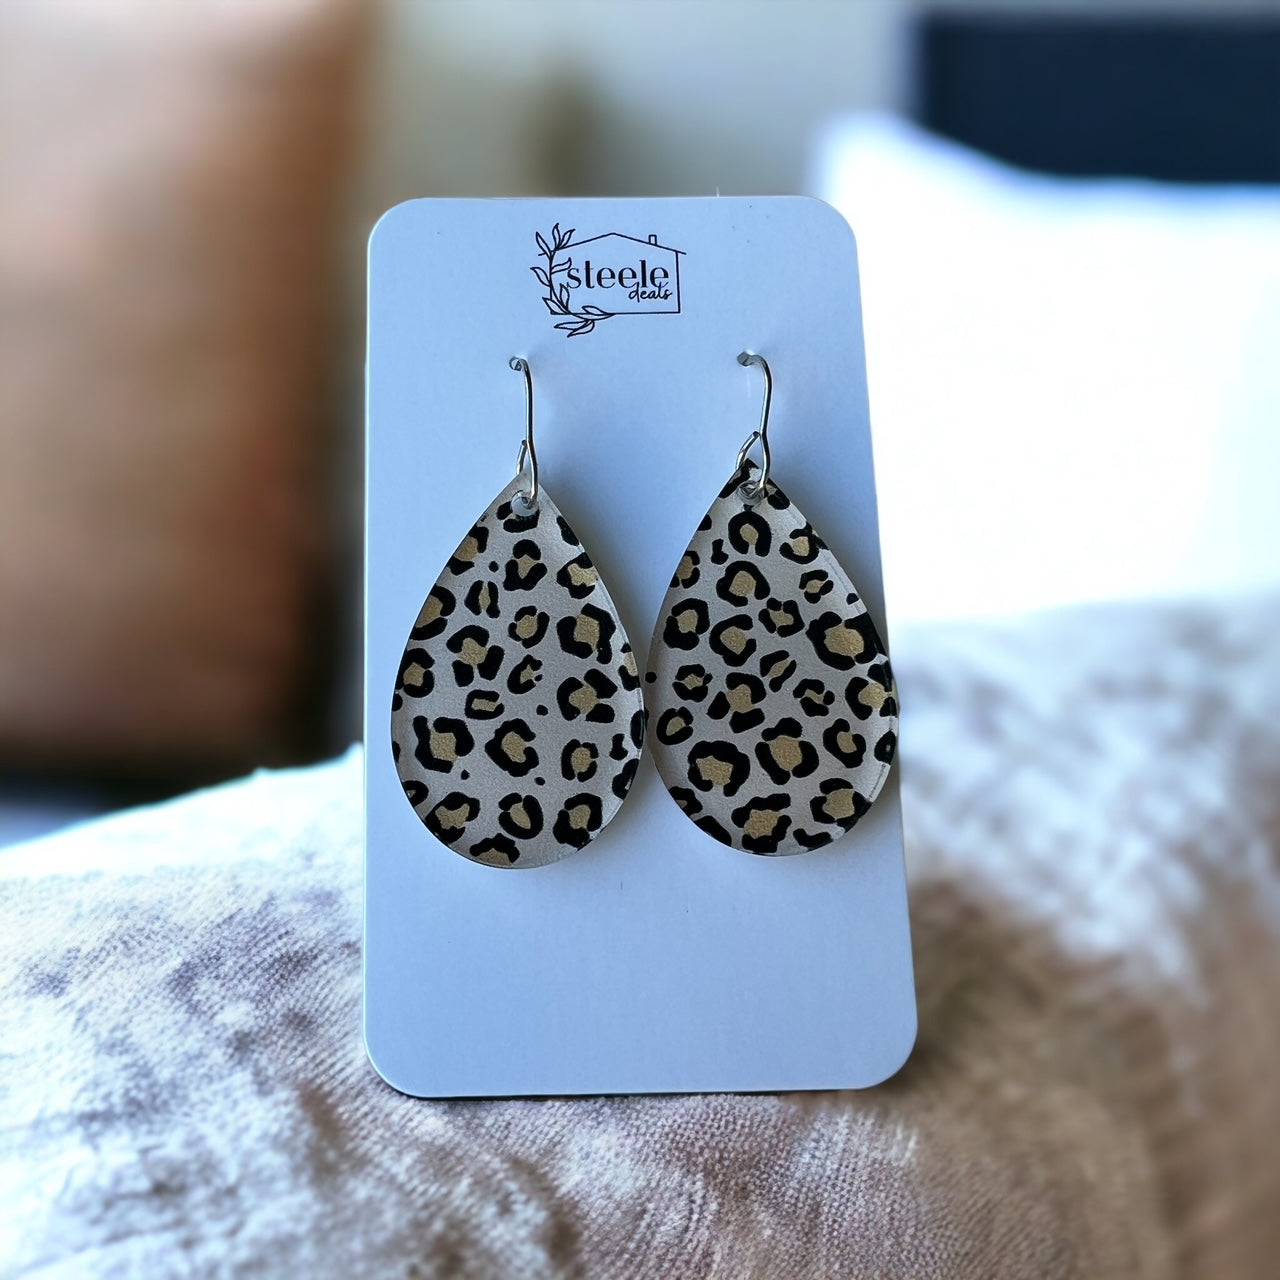 acrylic teardrop earrings with leopard print